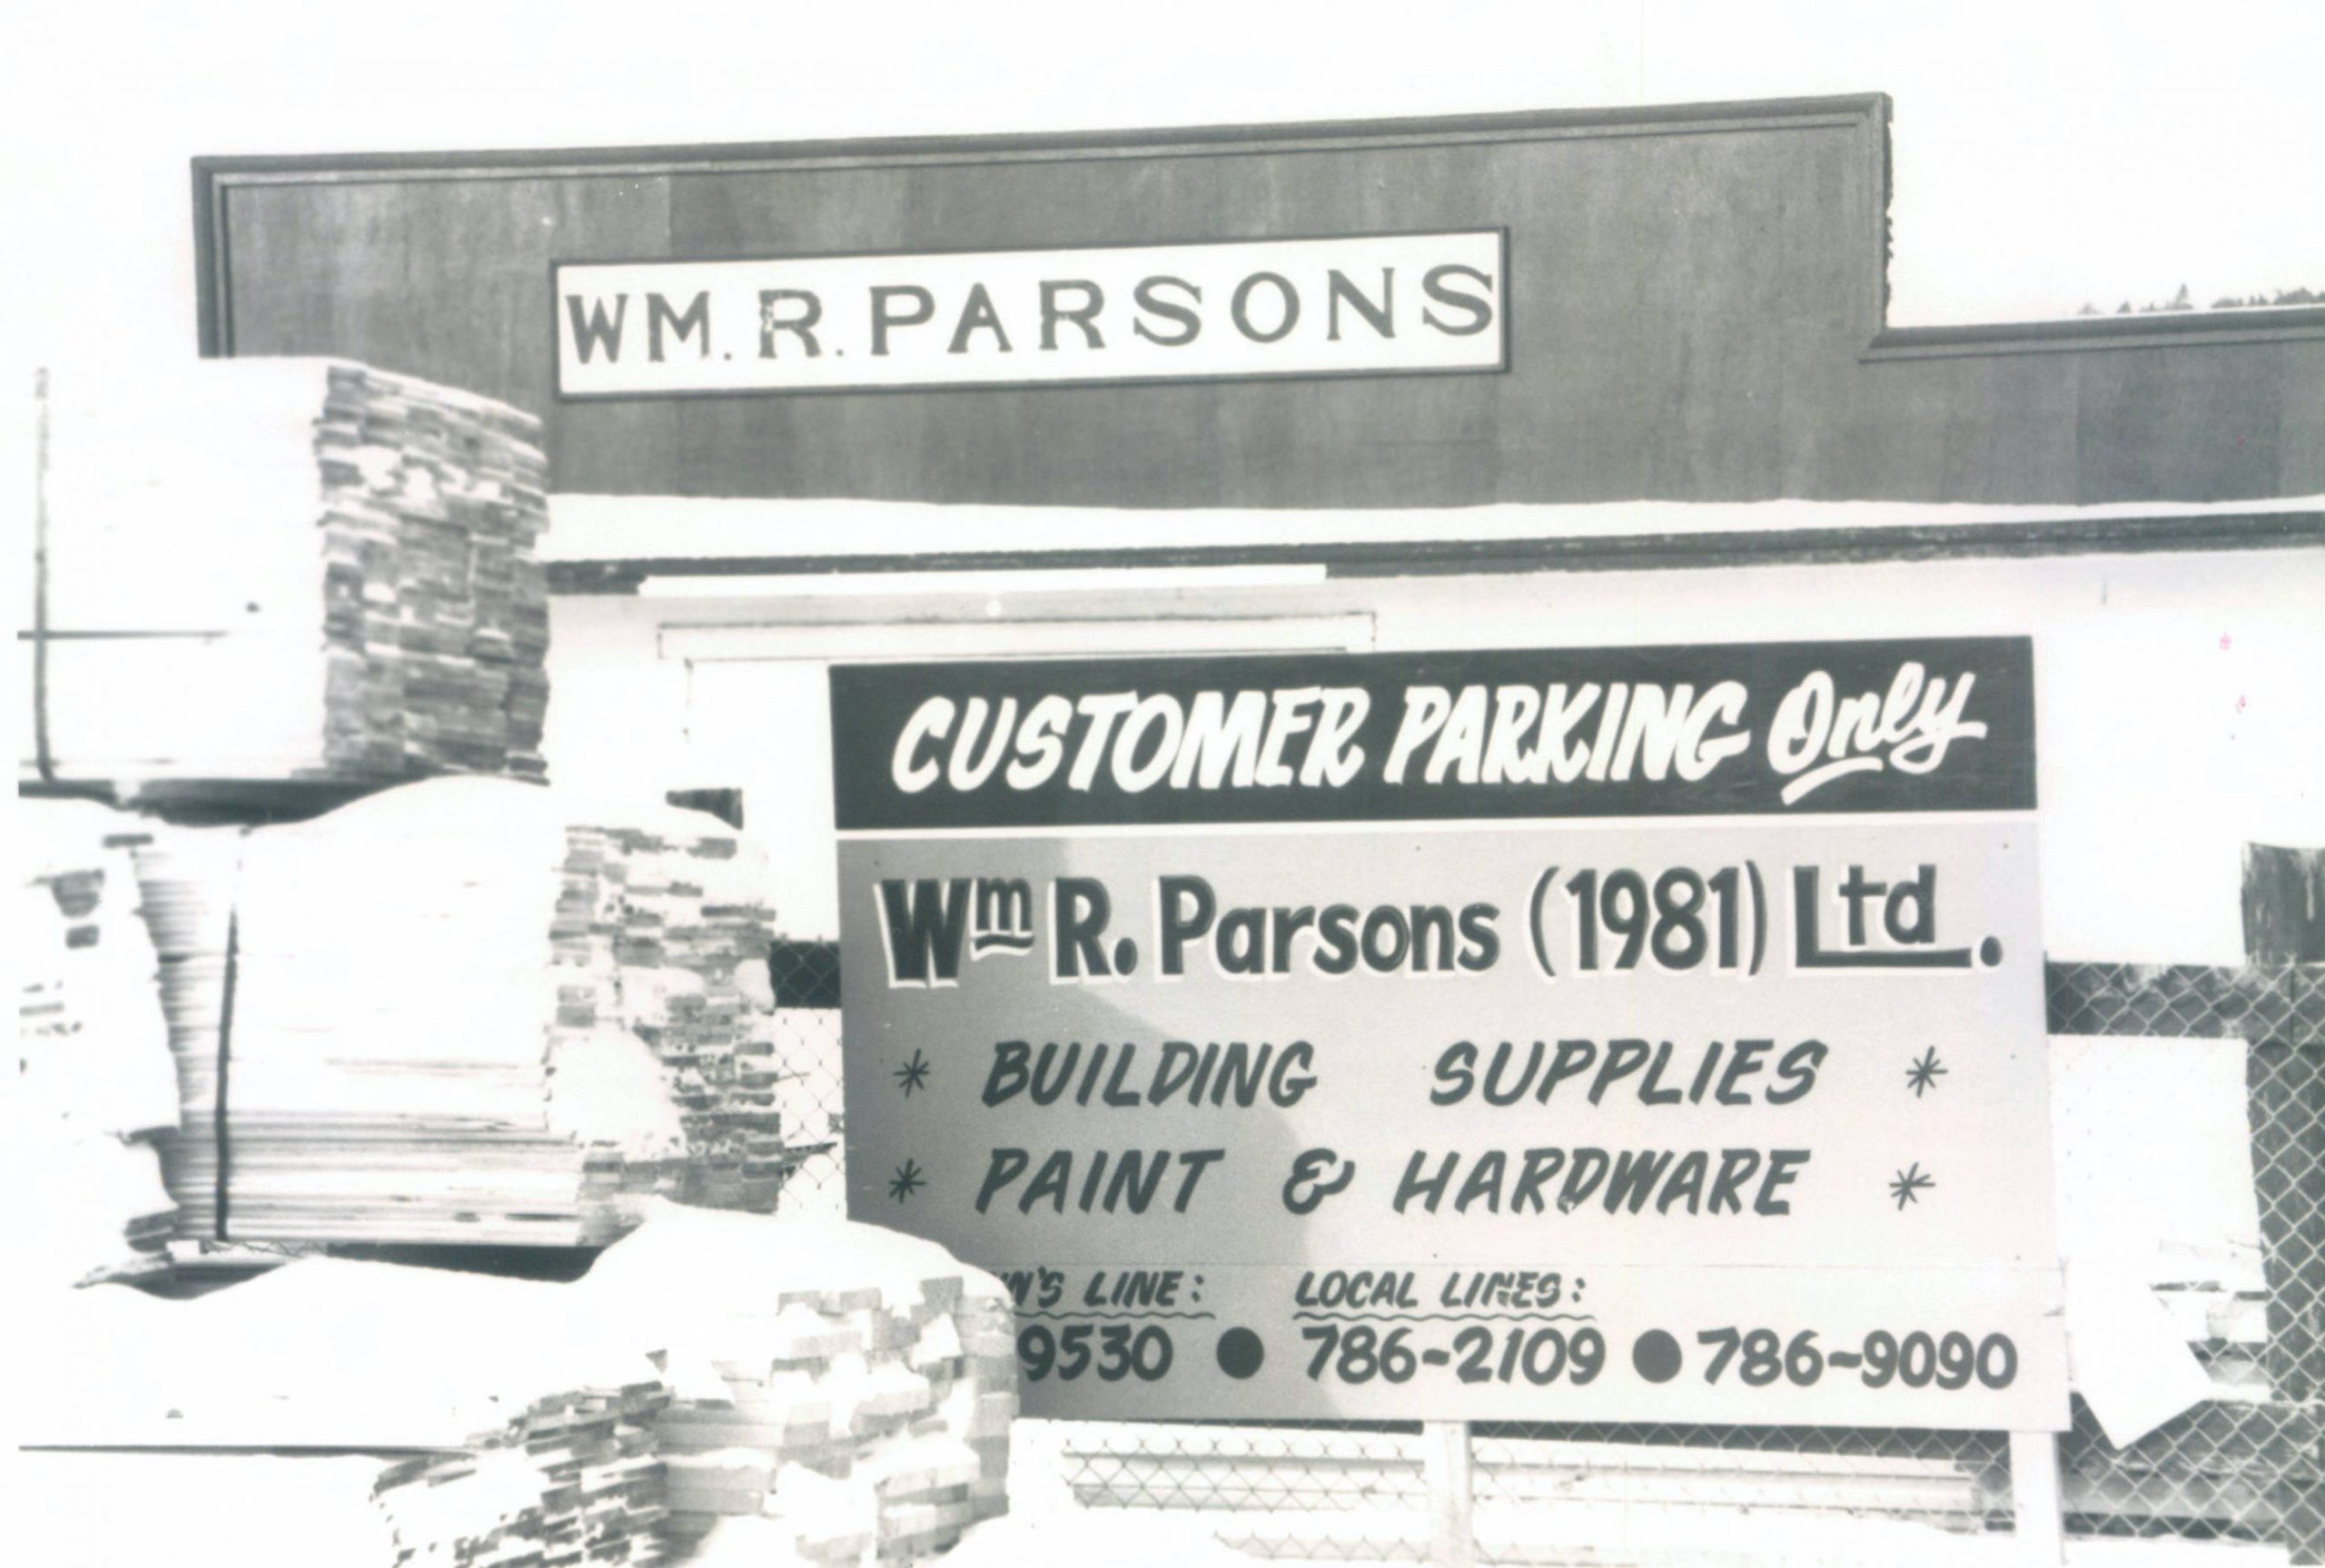 Photographie montrant l’extérieur d’un site commercial avec deux grands panneaux peints affichant le nom de l’entreprise, William R. Parsons. 